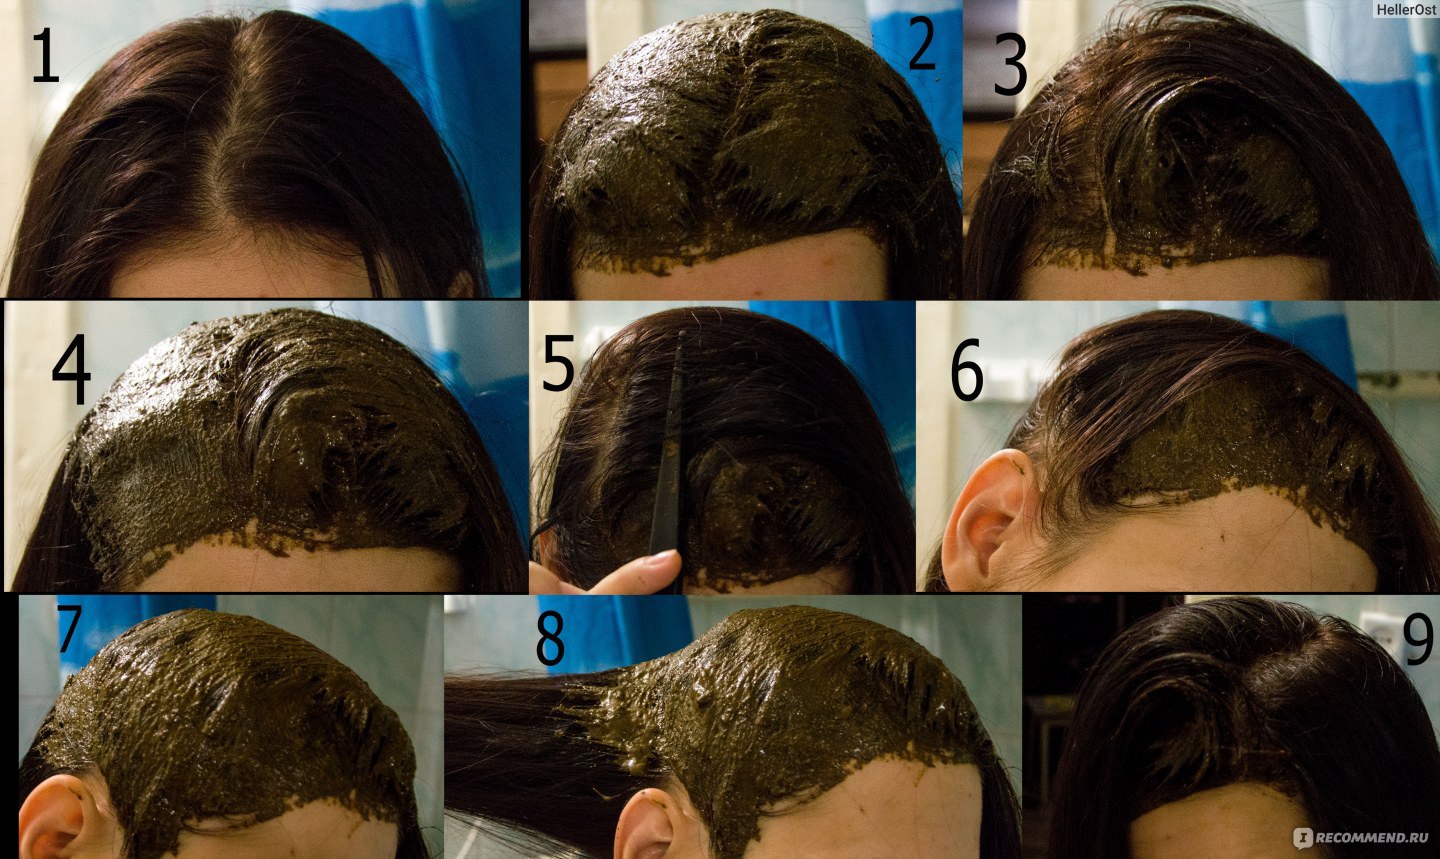 Маска из басмы помогает от выпадения волос